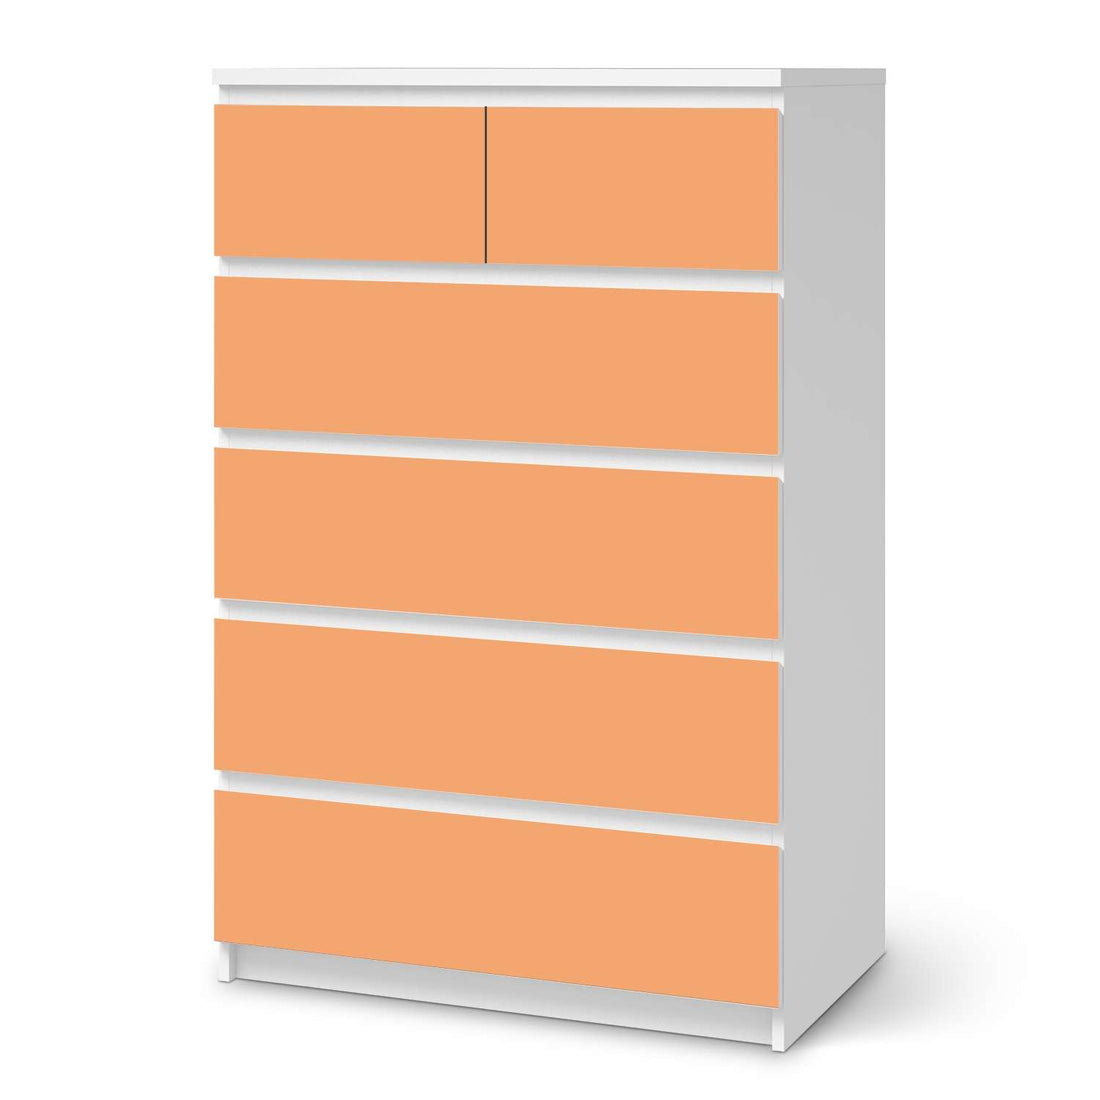 Möbel Klebefolie Orange Light - IKEA Malm Kommode 6 Schubladen (hoch)  - weiss